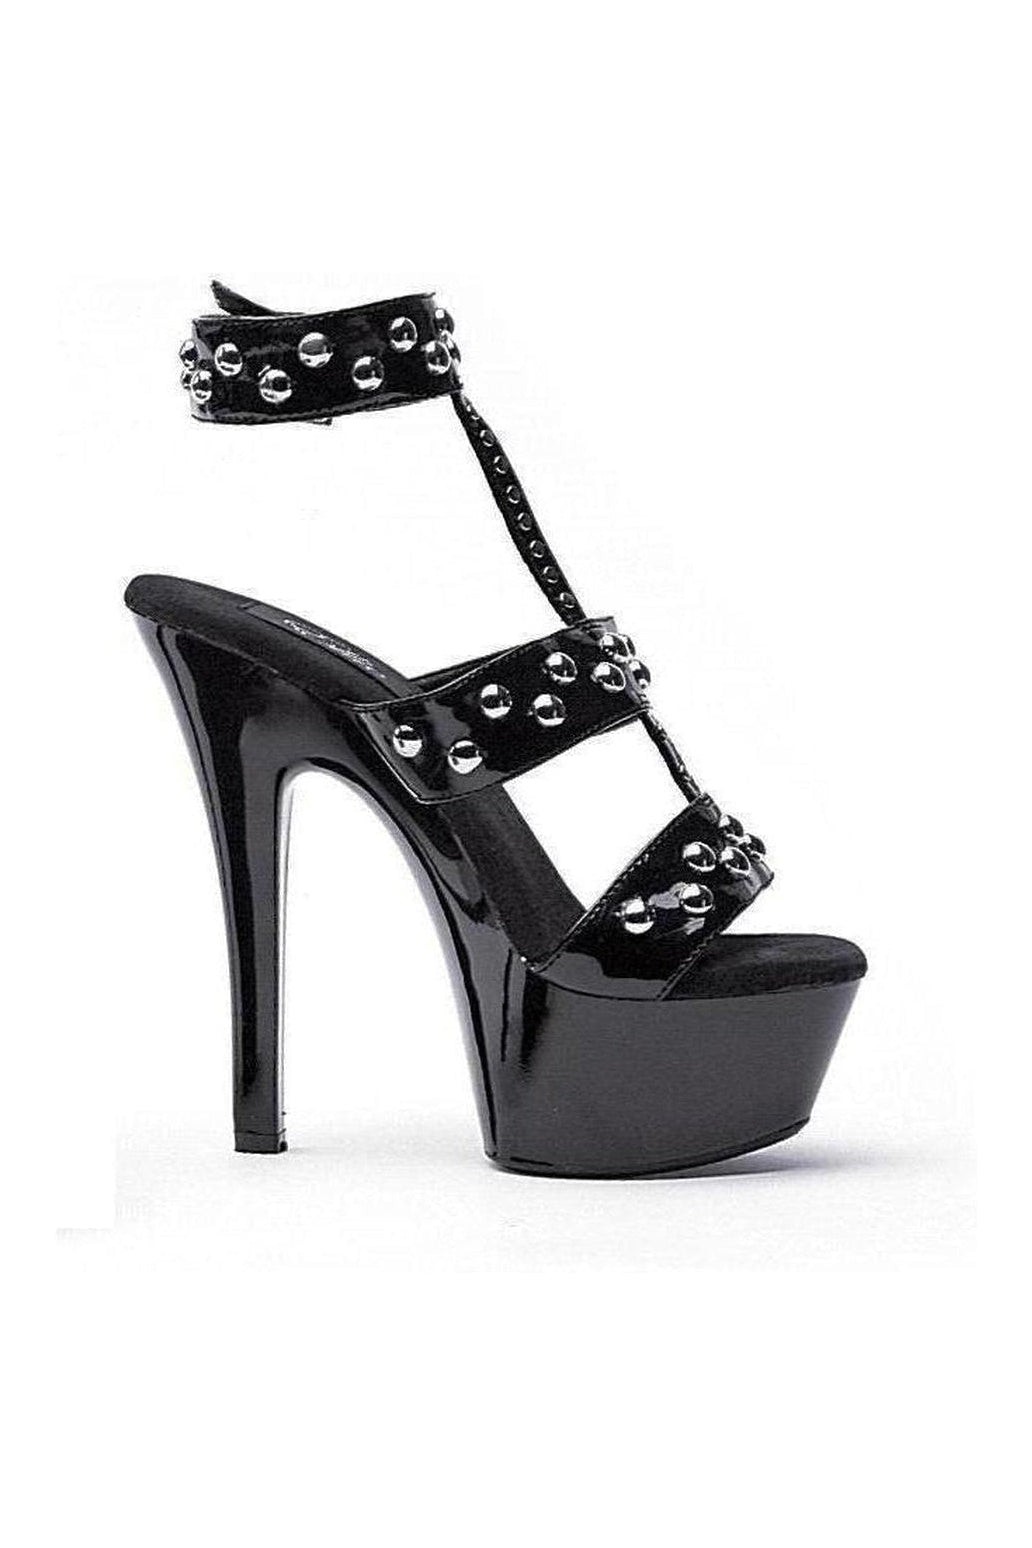 601-QUEEN Platform Sandal | Black Patent-Ellie Shoes-Black-Sandals-SEXYSHOES.COM